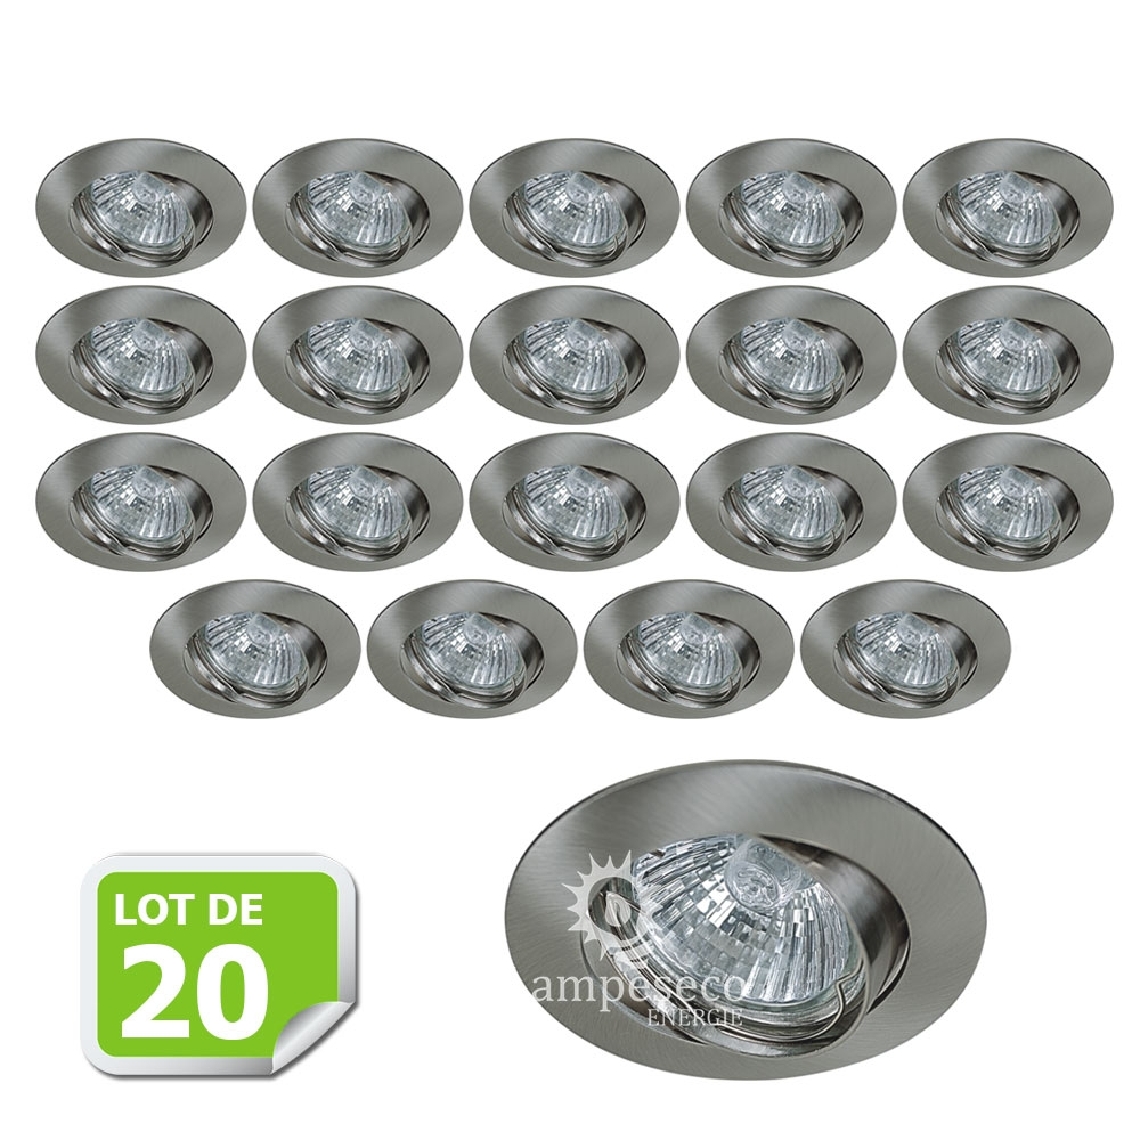 Eurobryte - Lot de 20 Support encastrable orientable ronde pour ampoules halogènes, CFL ou LED diametre 81mm Couleur acier brossé ref.970 - Boîtes d'encastrement